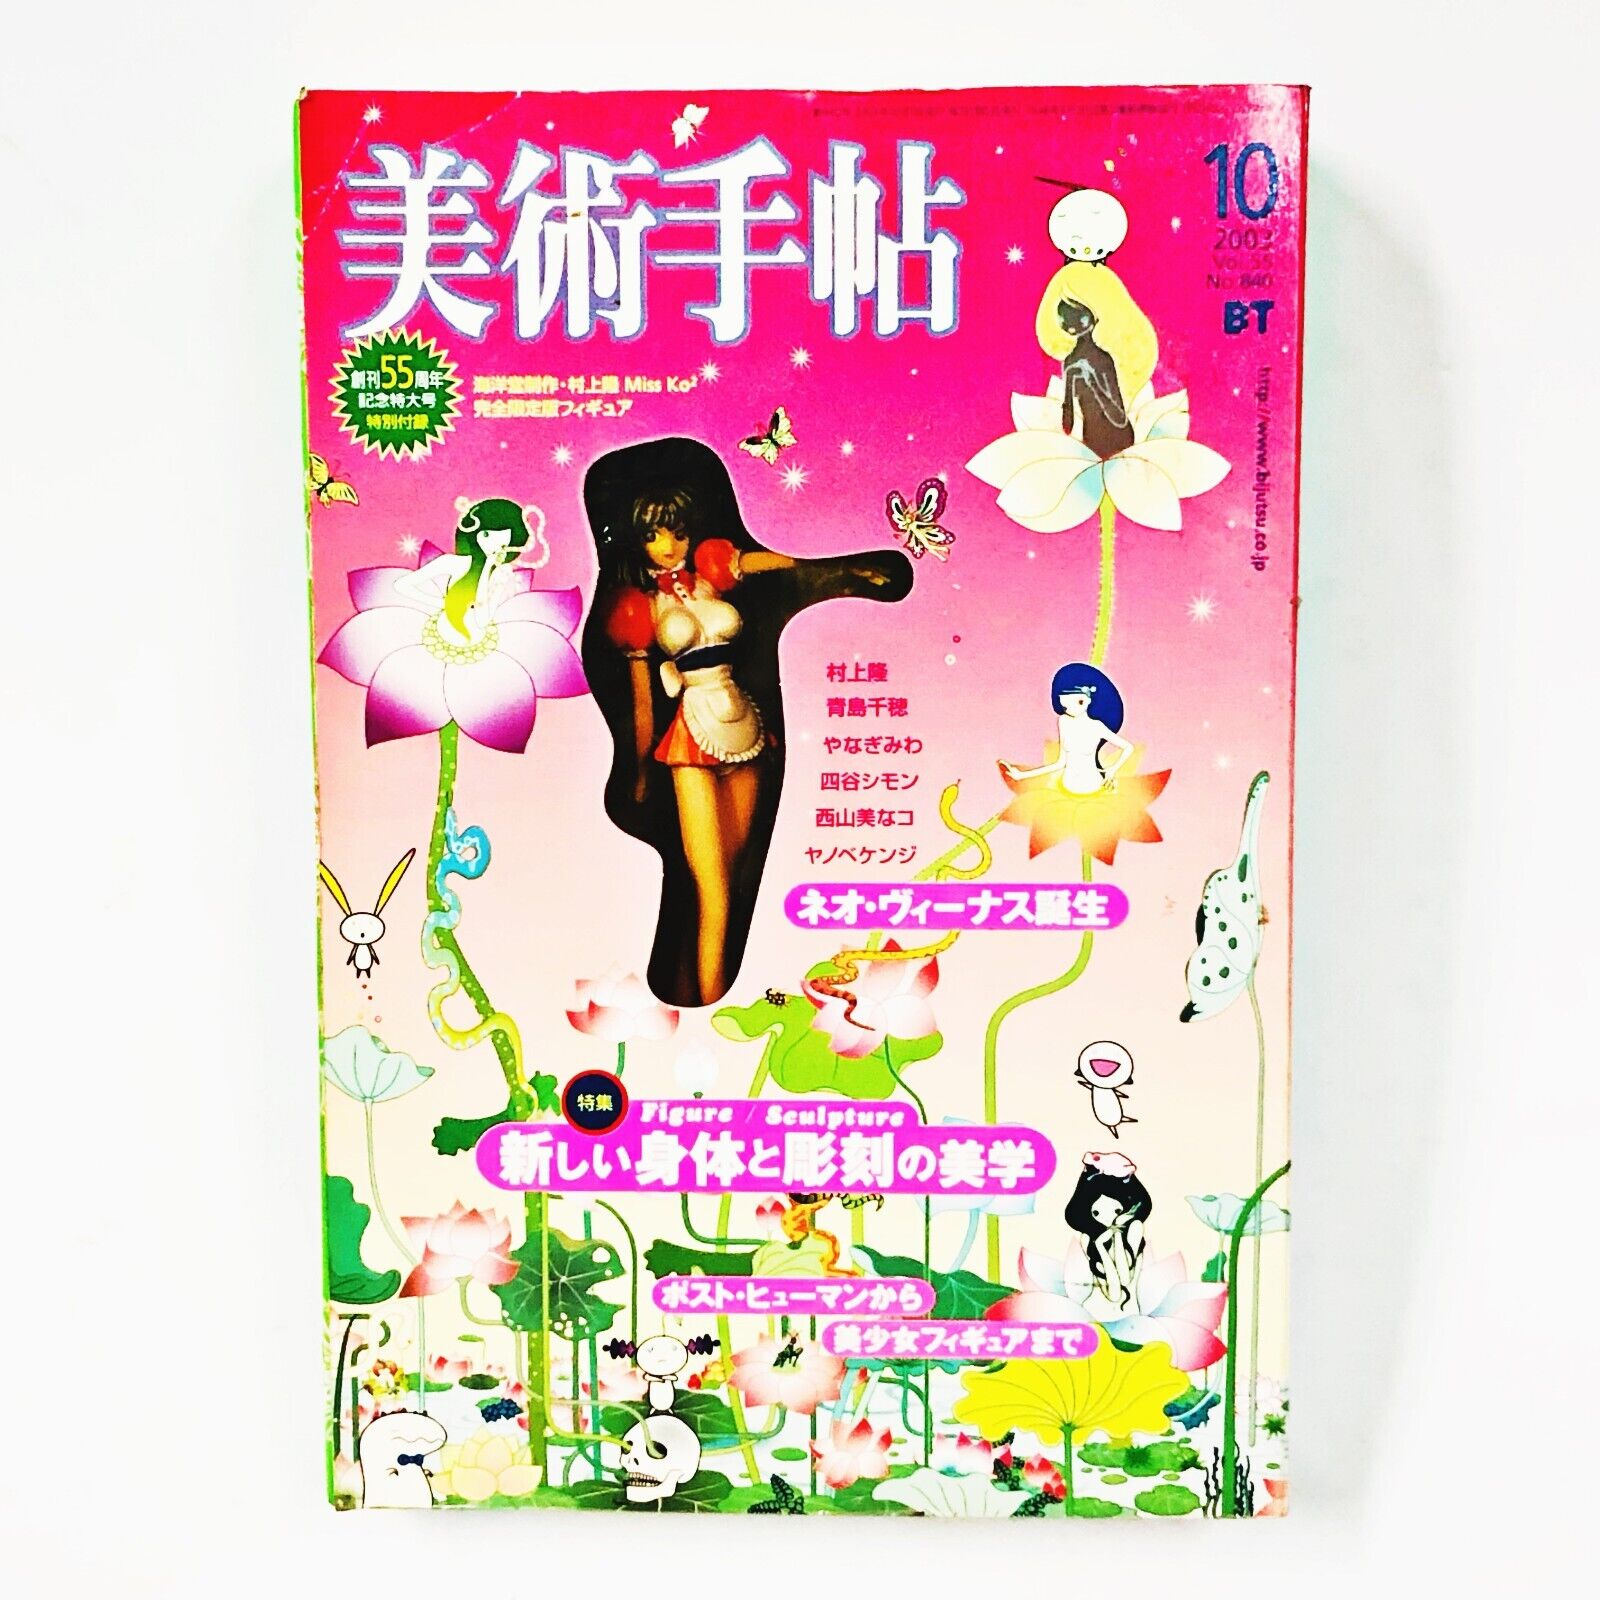 Takashi Murakami Super Flat Miss Ko2 Blond BT Magazine Museum 4 in. Figure Rare